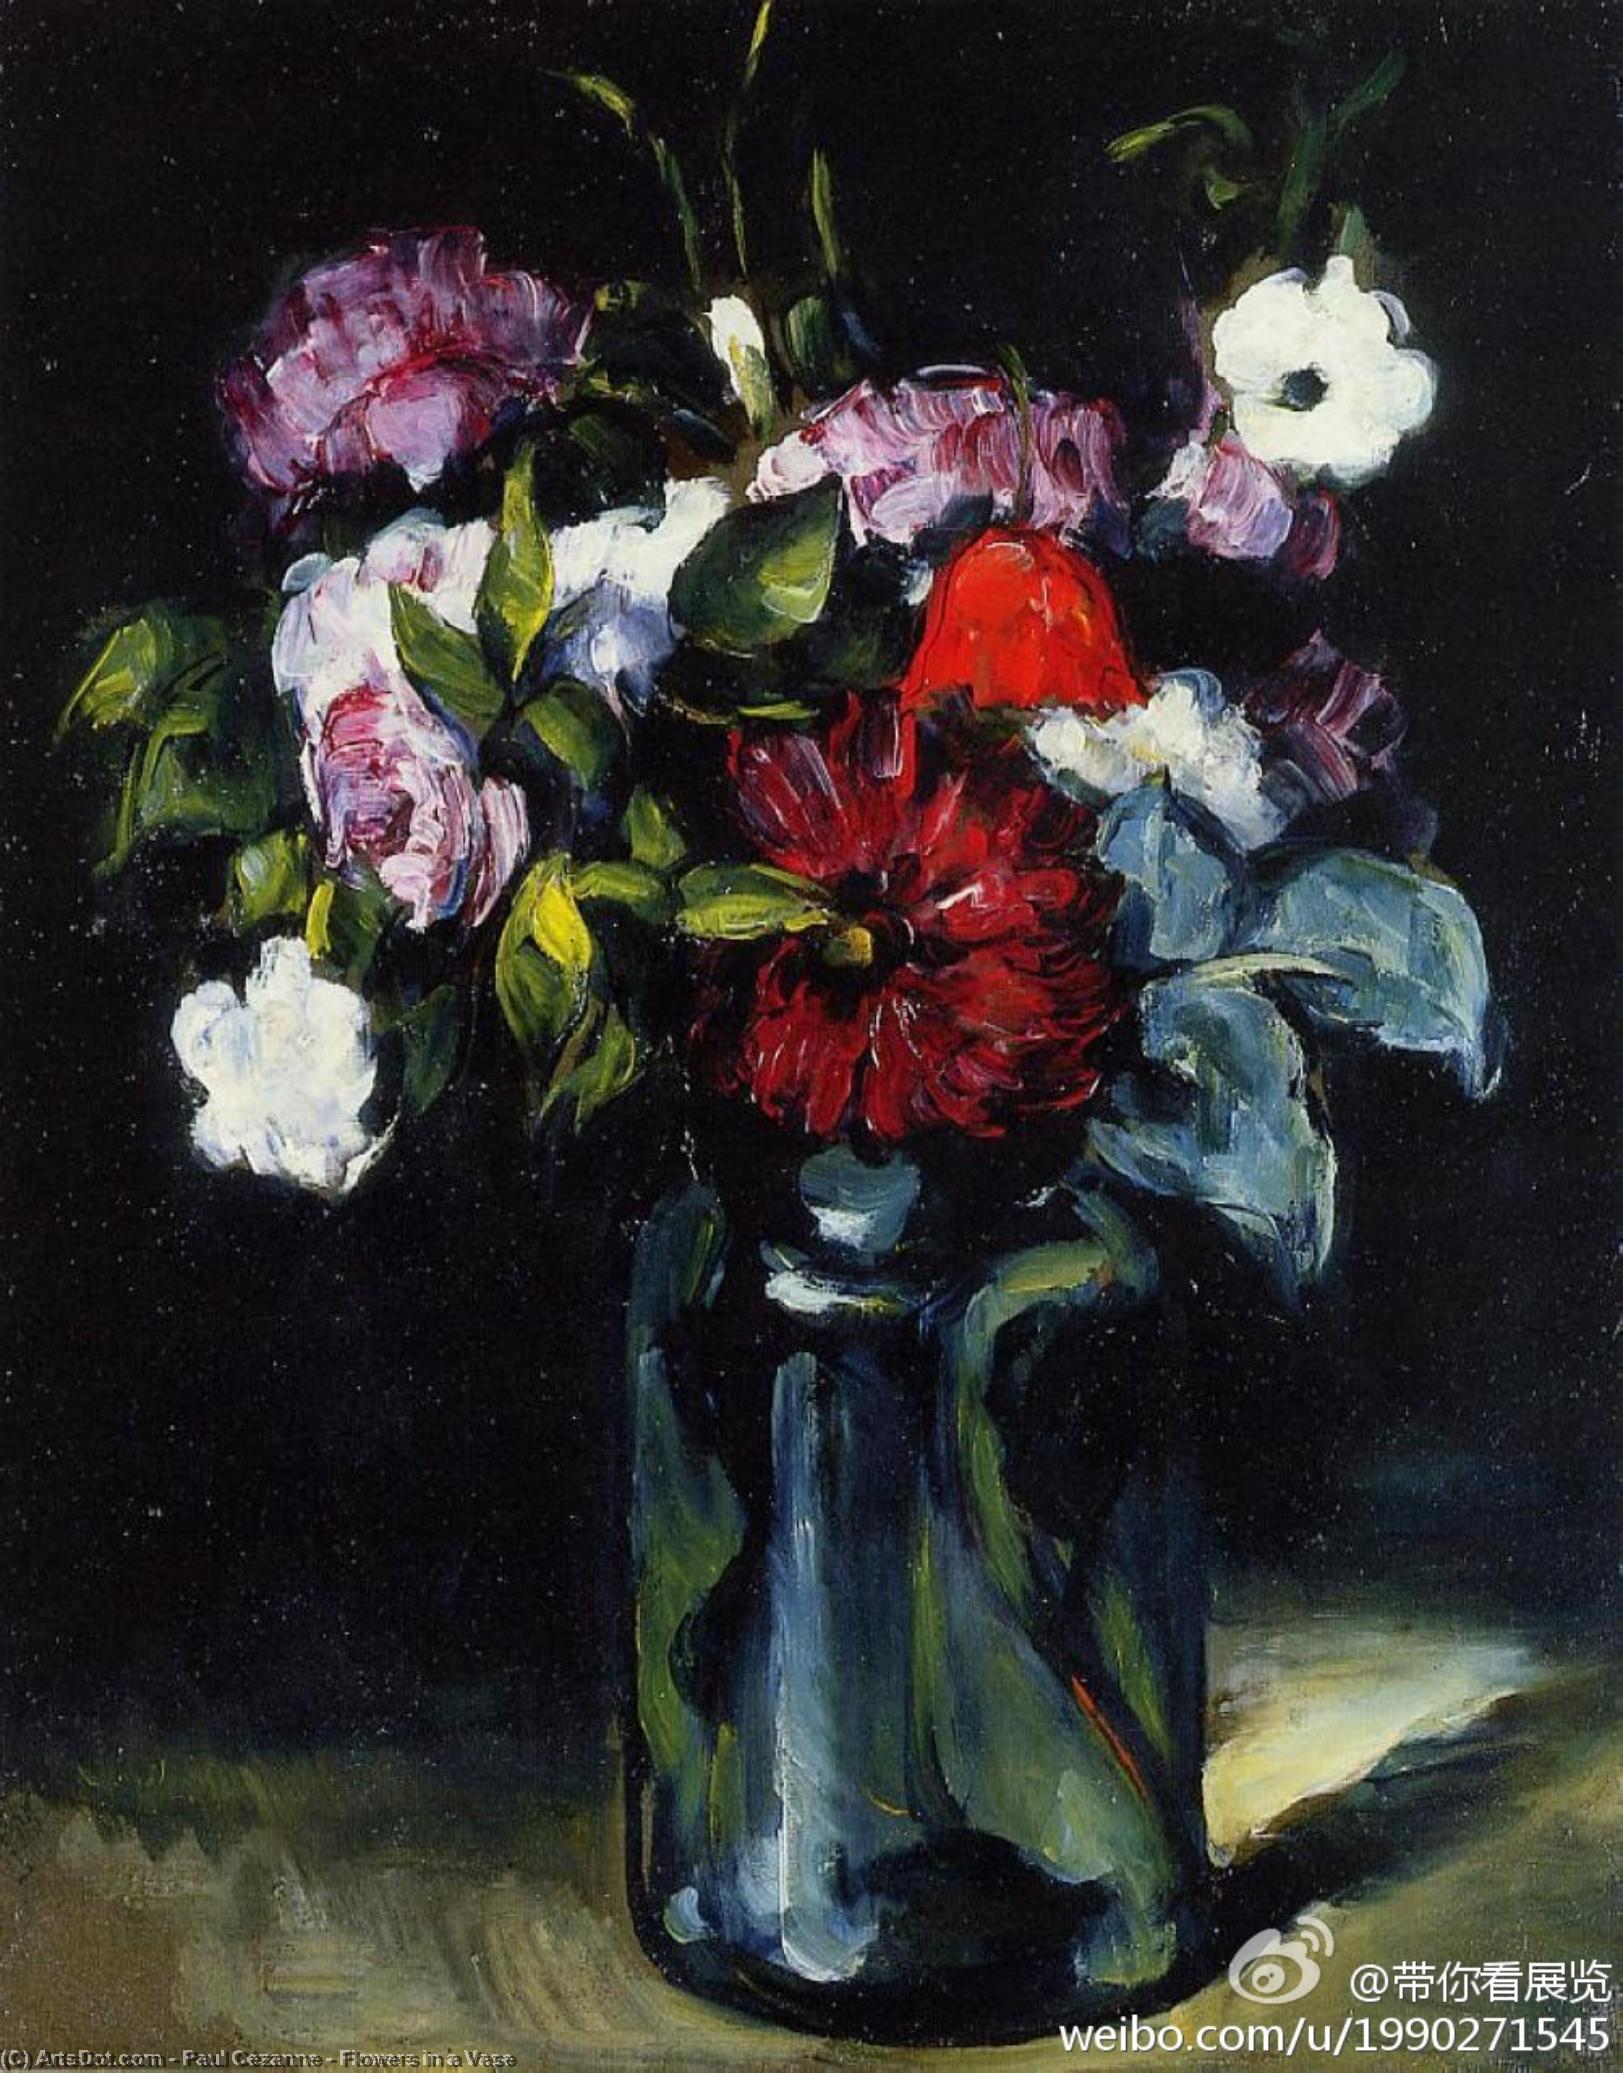 WikiOO.org - Encyclopedia of Fine Arts - Schilderen, Artwork Paul Cezanne - Flowers in a Vase